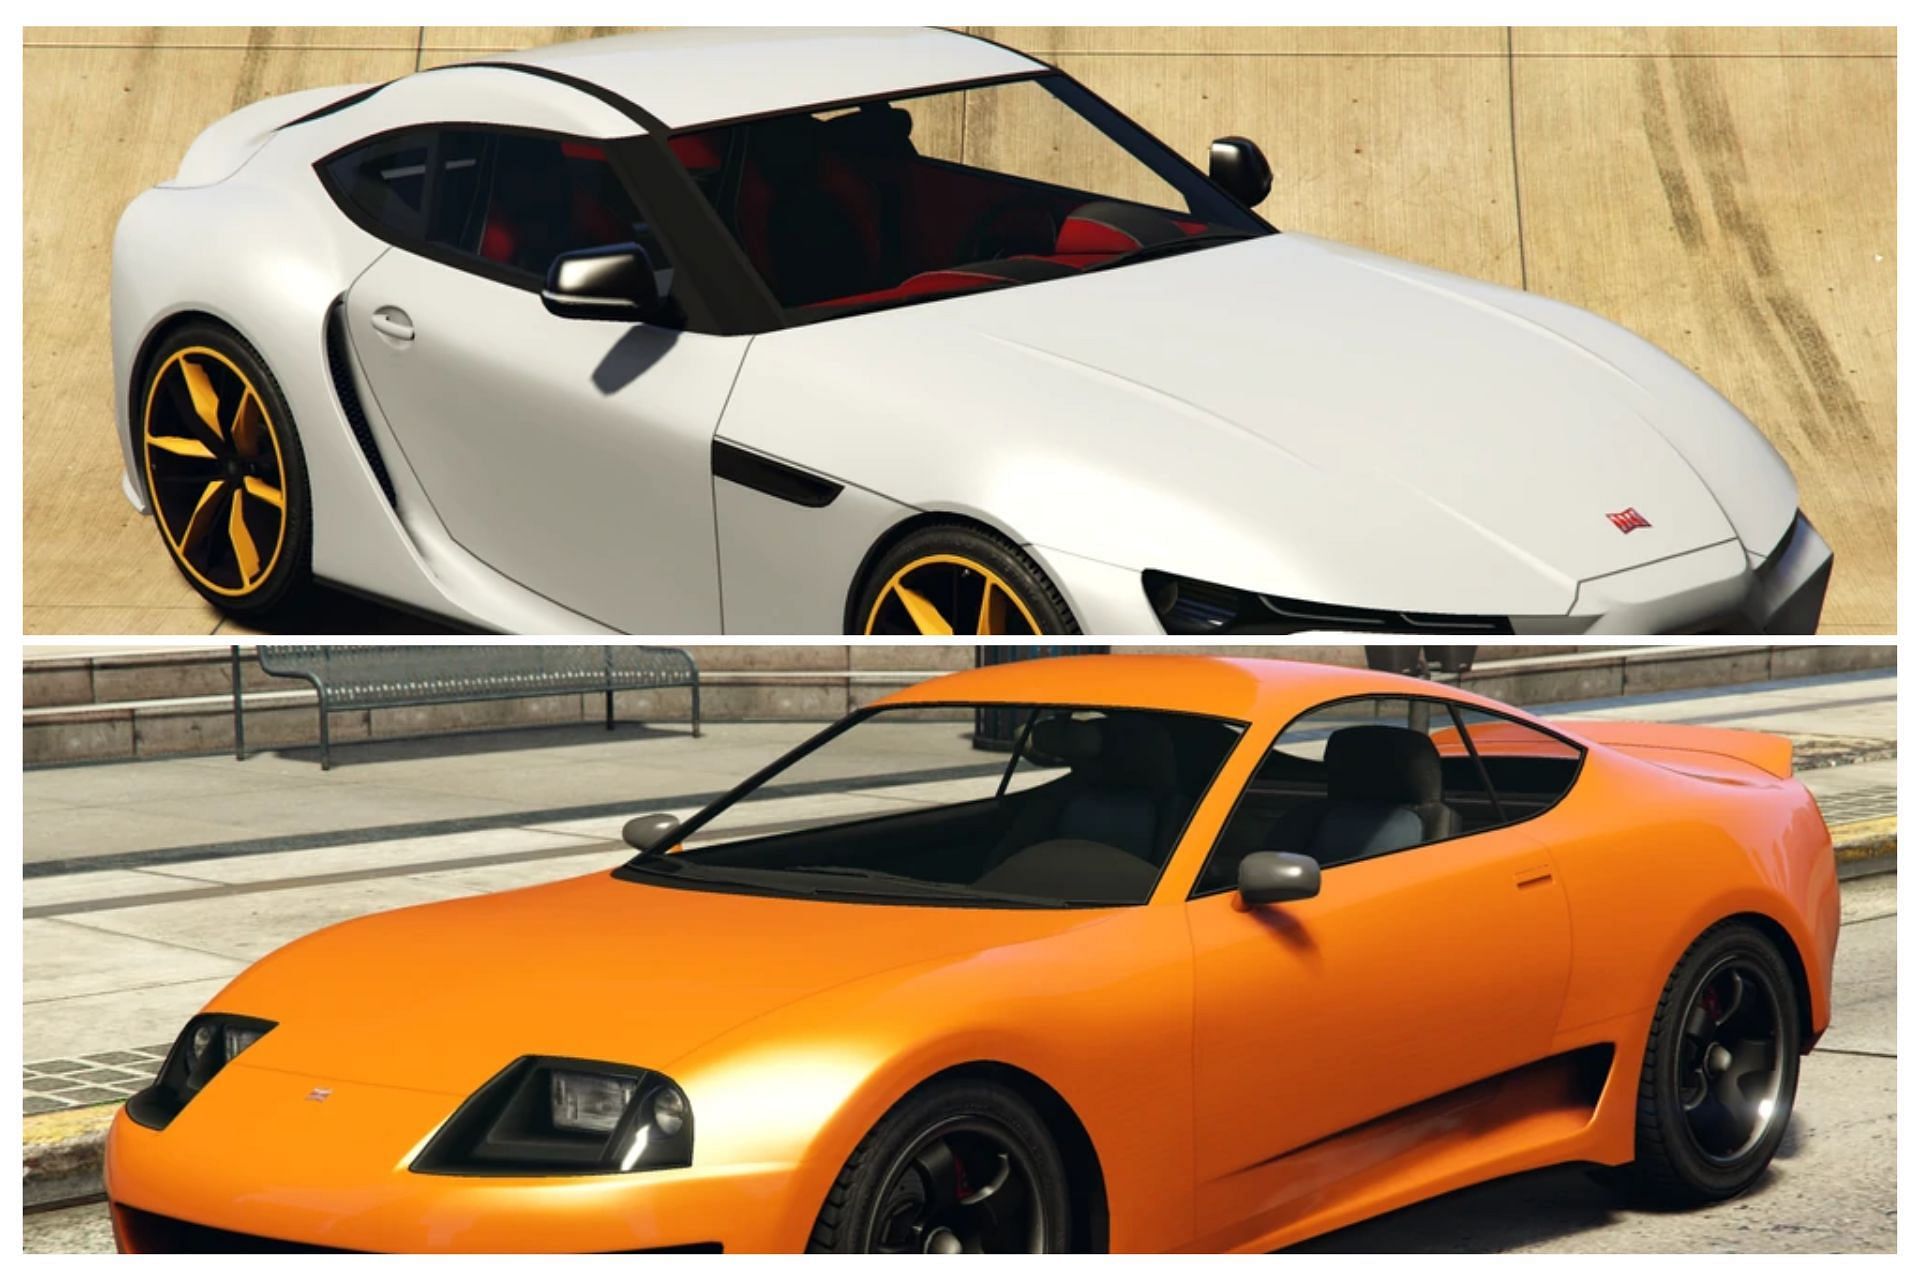 GTA Online cars based on Toyota Supra (Images via GTA Fandom)